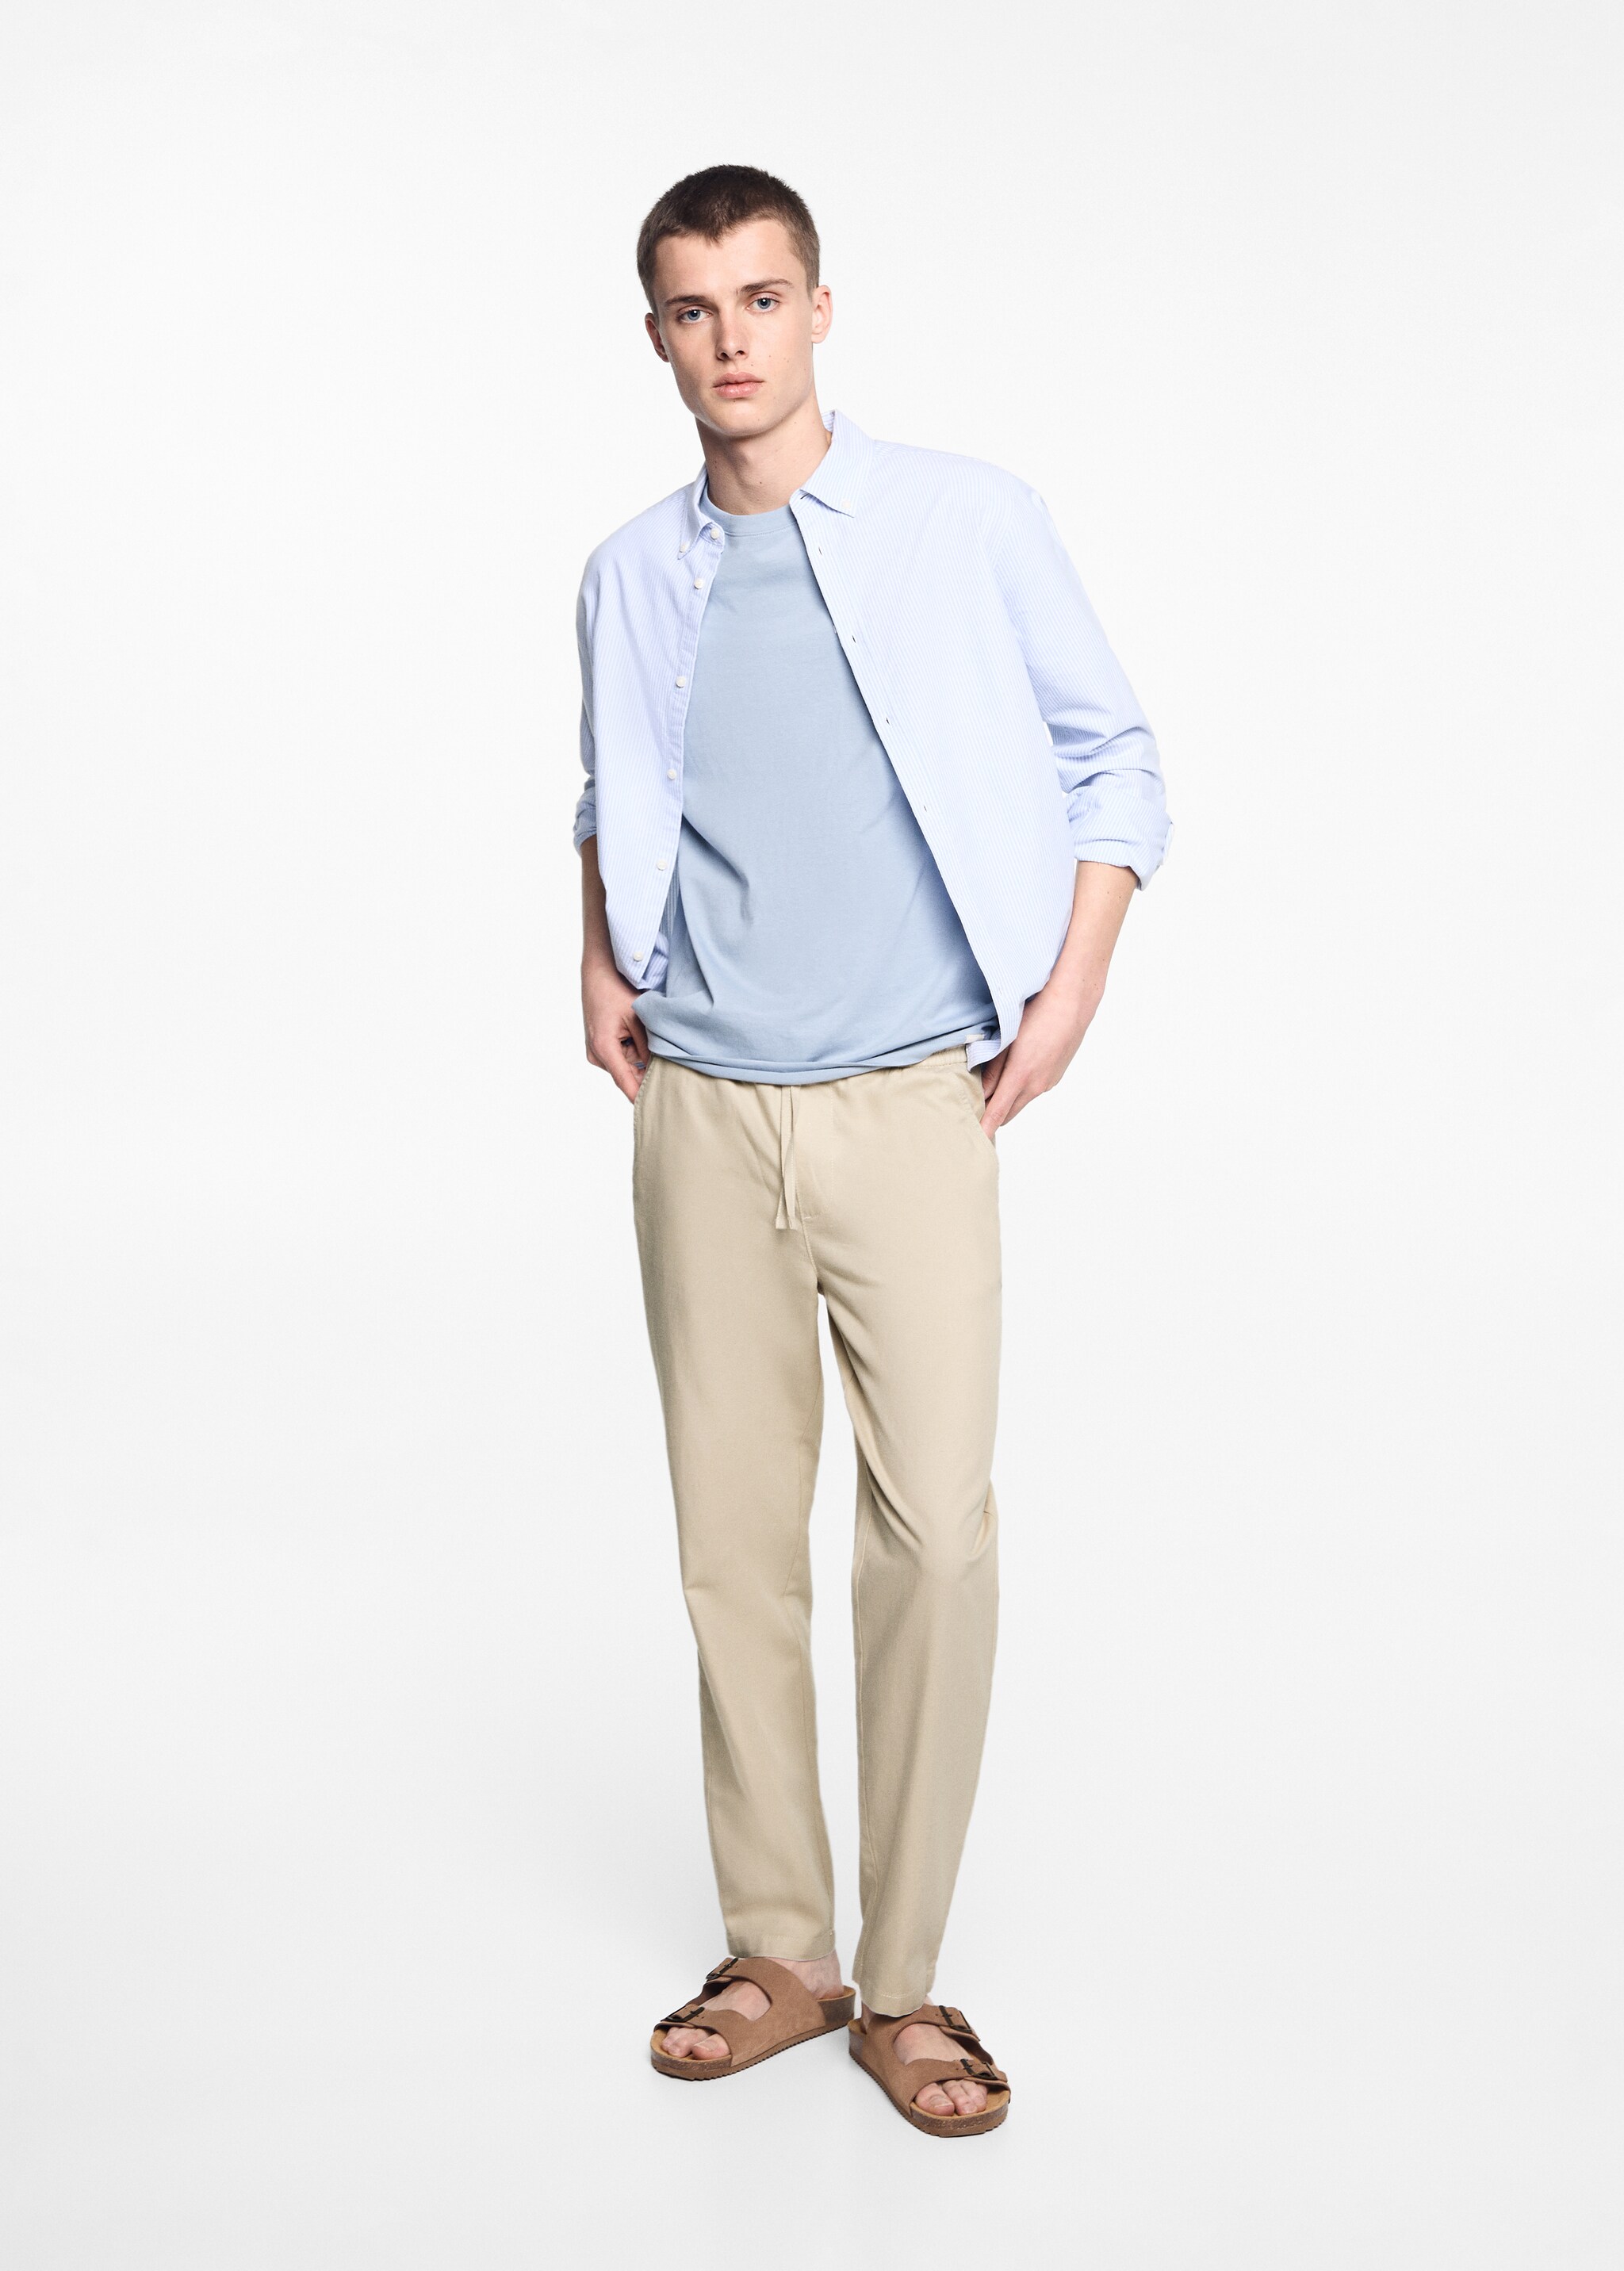 Pantalón lino cintura elástica - Plano general